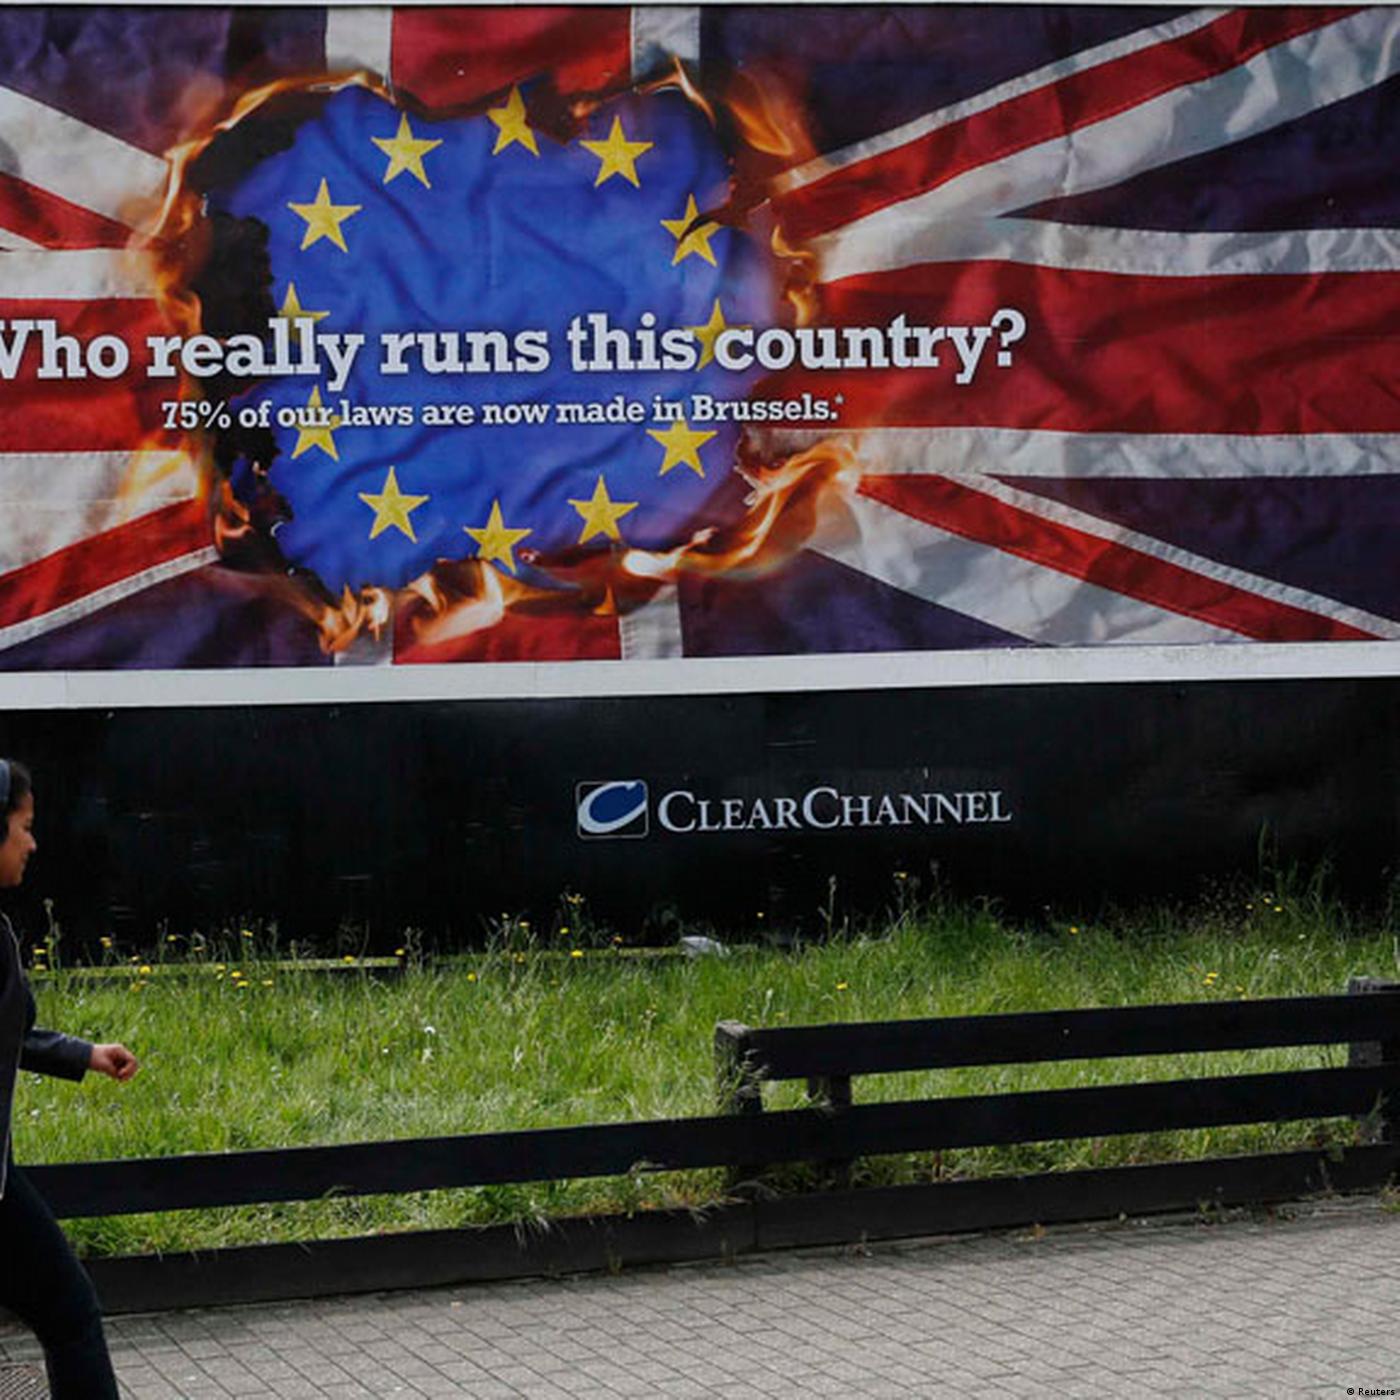 Britain: Taking on the Eurosceptics